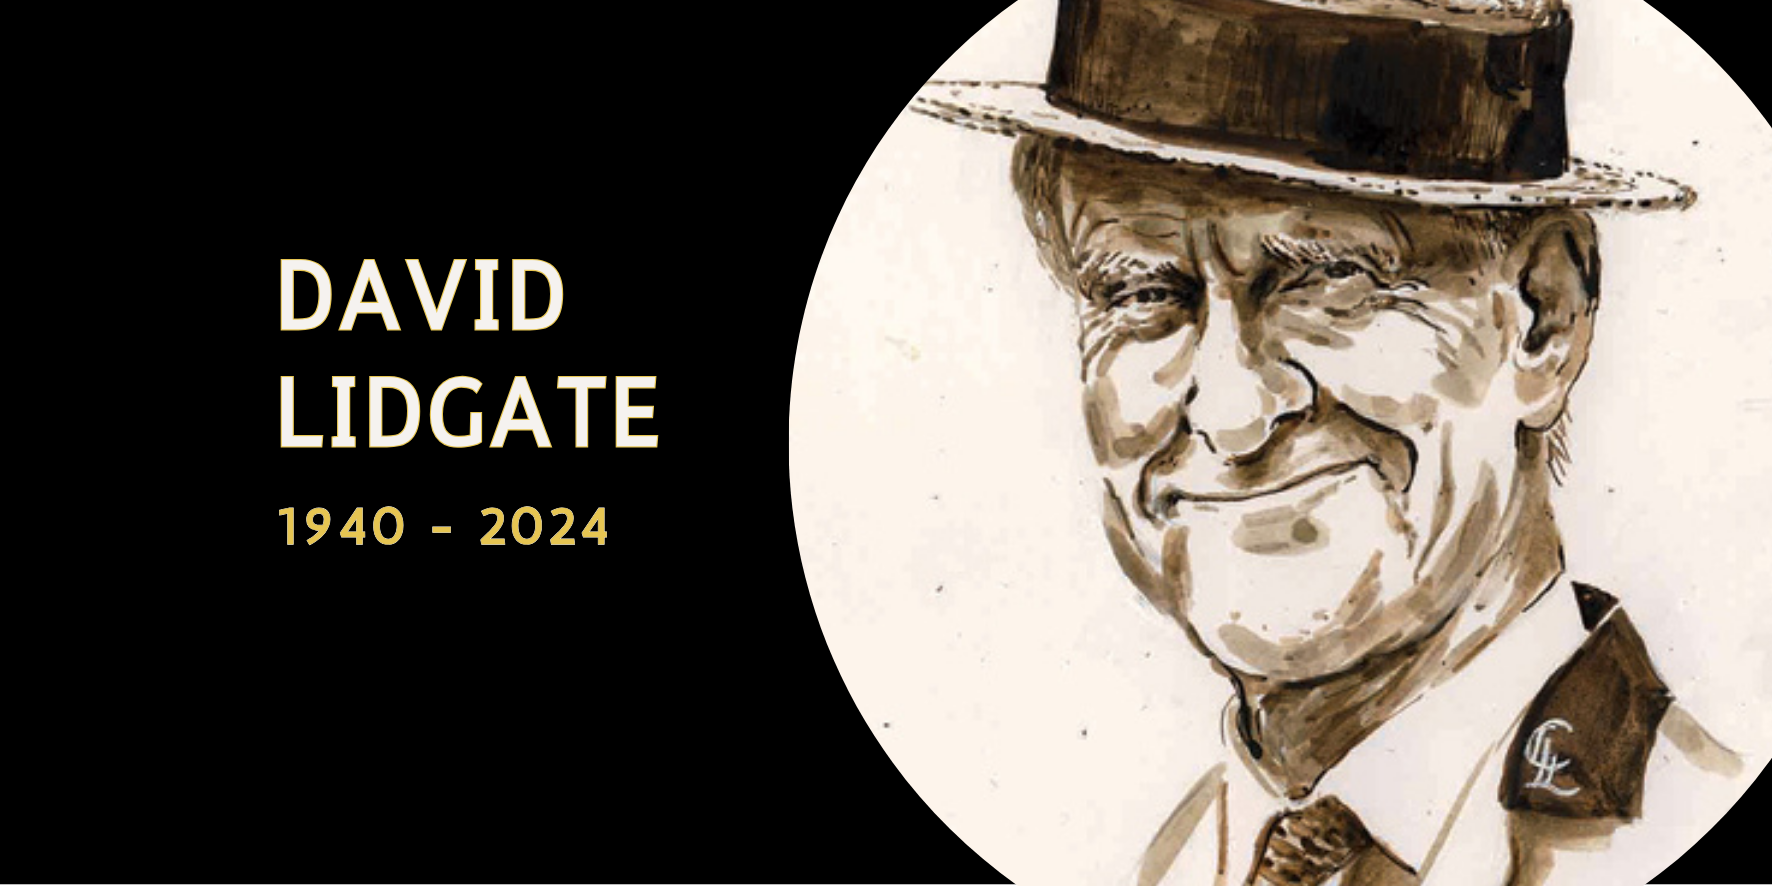 David Lidgate 1940 - 2024